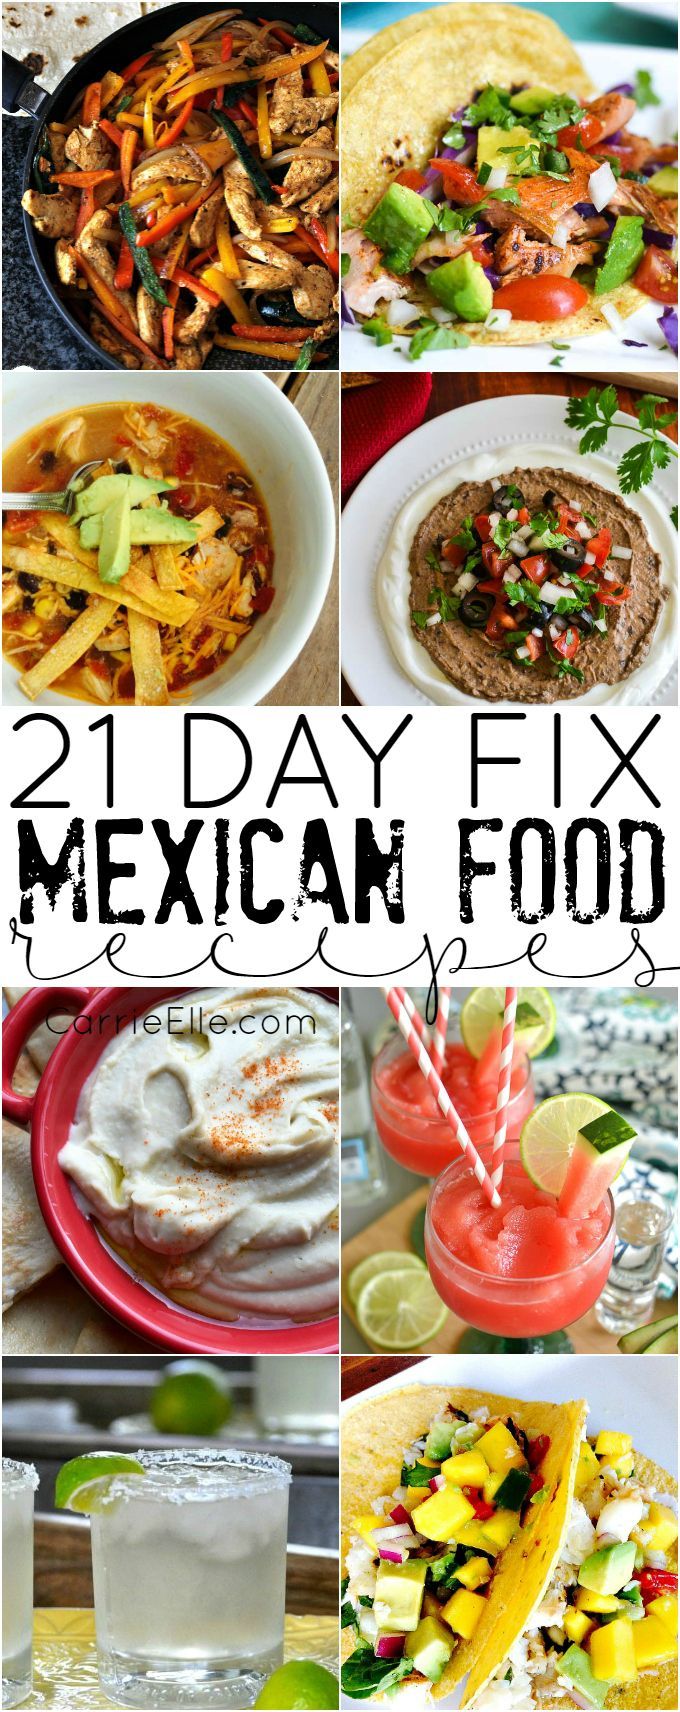 21 Day Fix Mexican Food Recipes